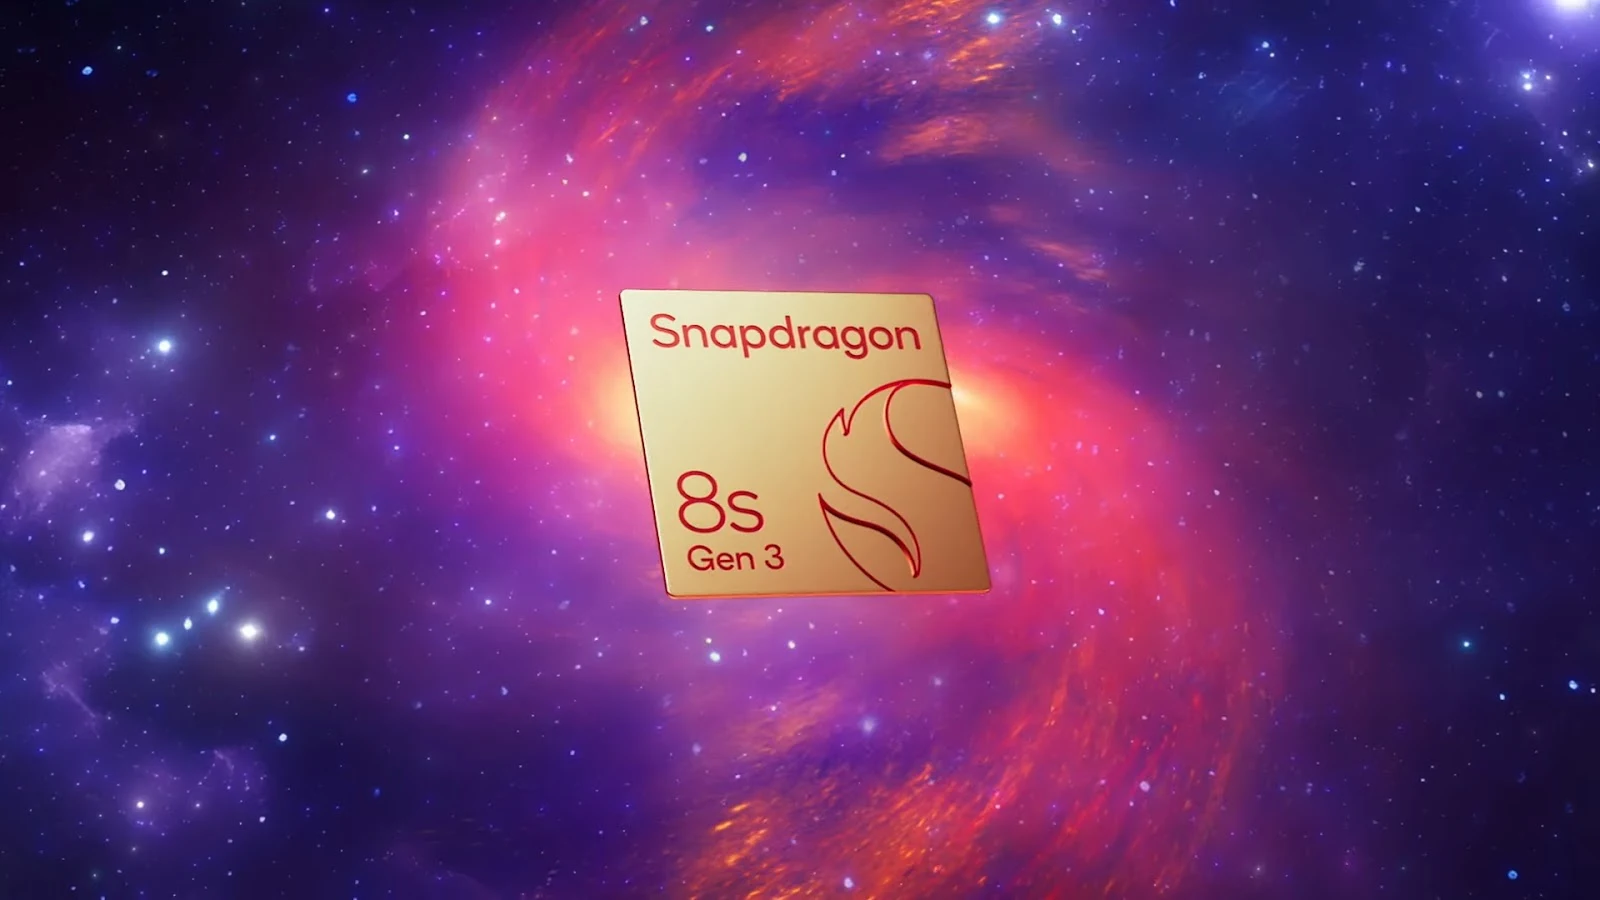 Snapdragon_8s_Gen_3_Chipset